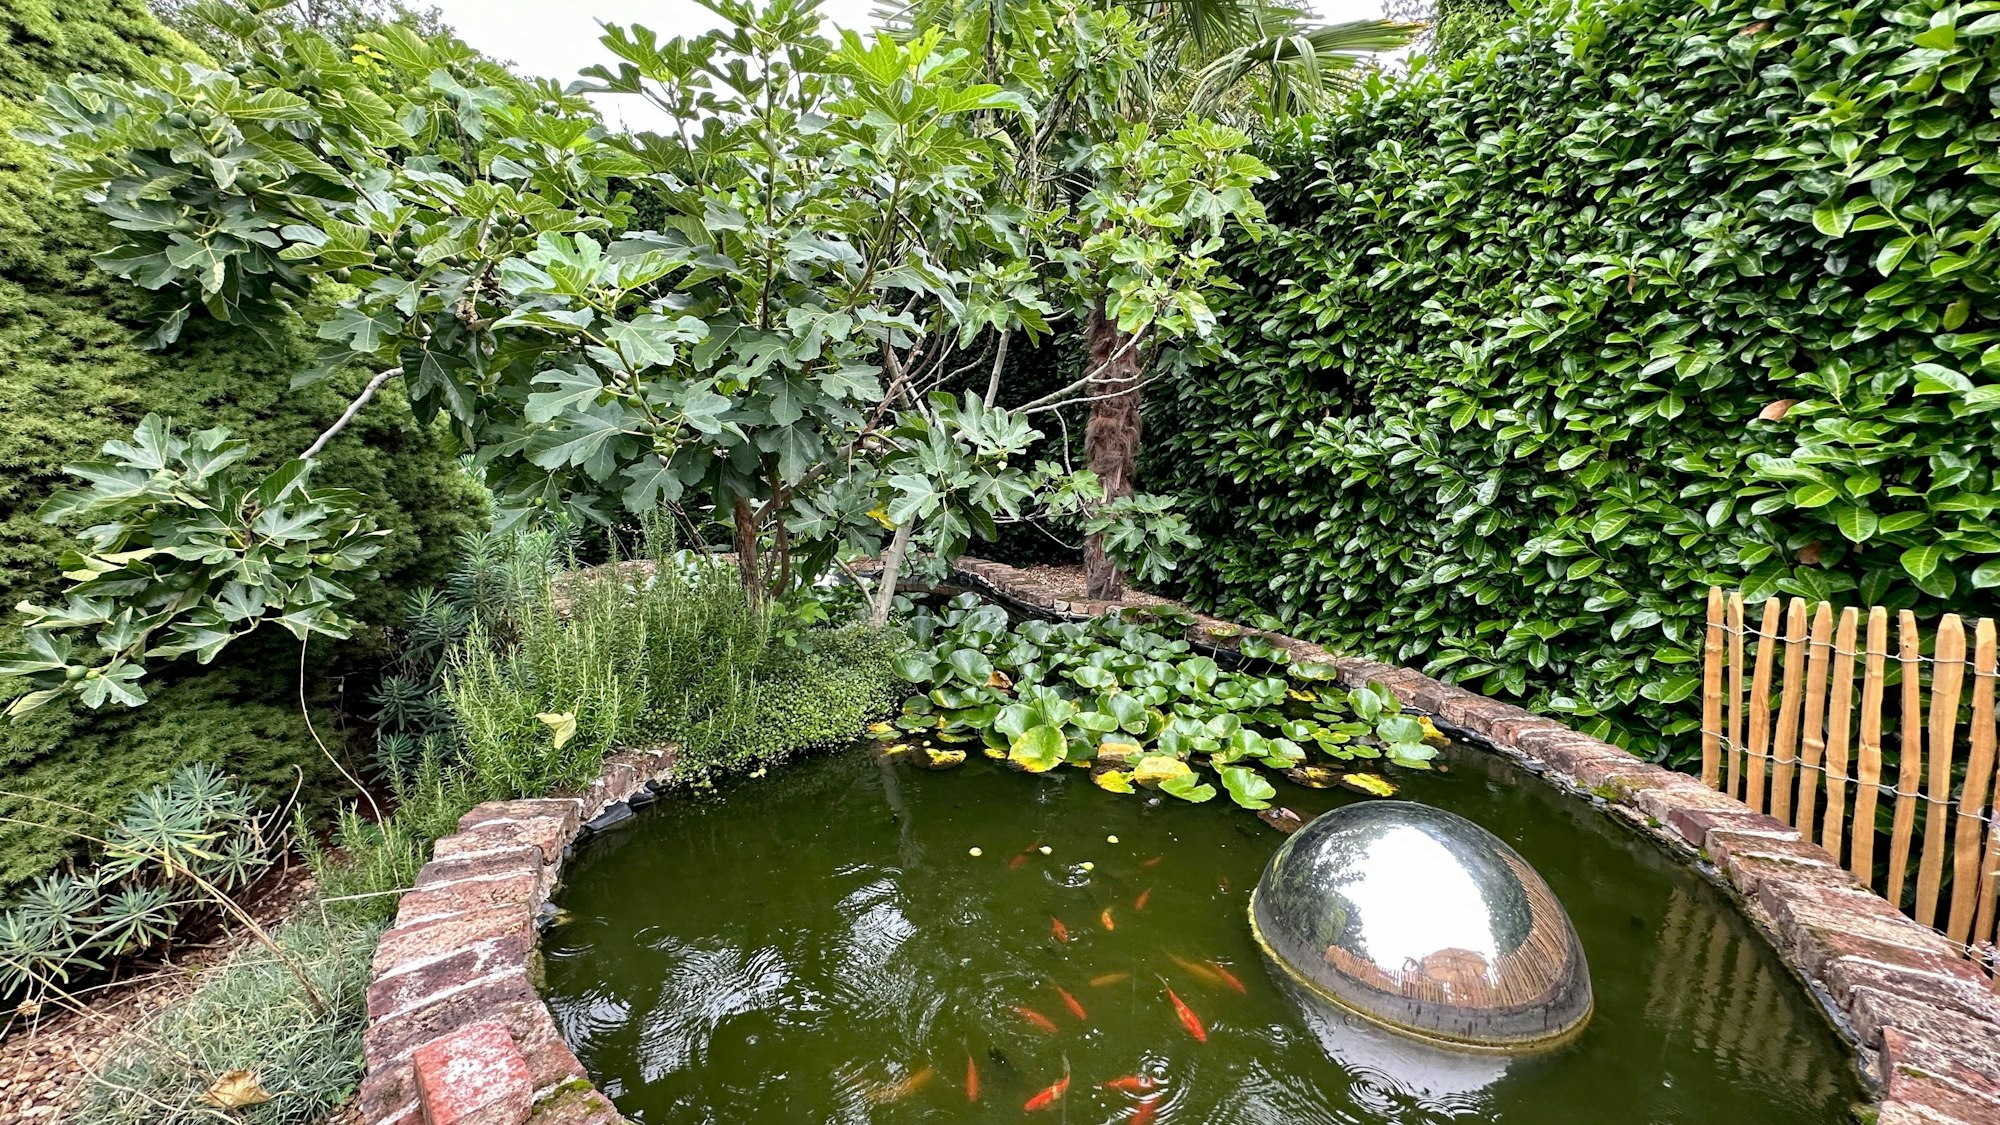 Ein Teich mit Goldfischen ist zu sehen, dahinter üppiges Grün.